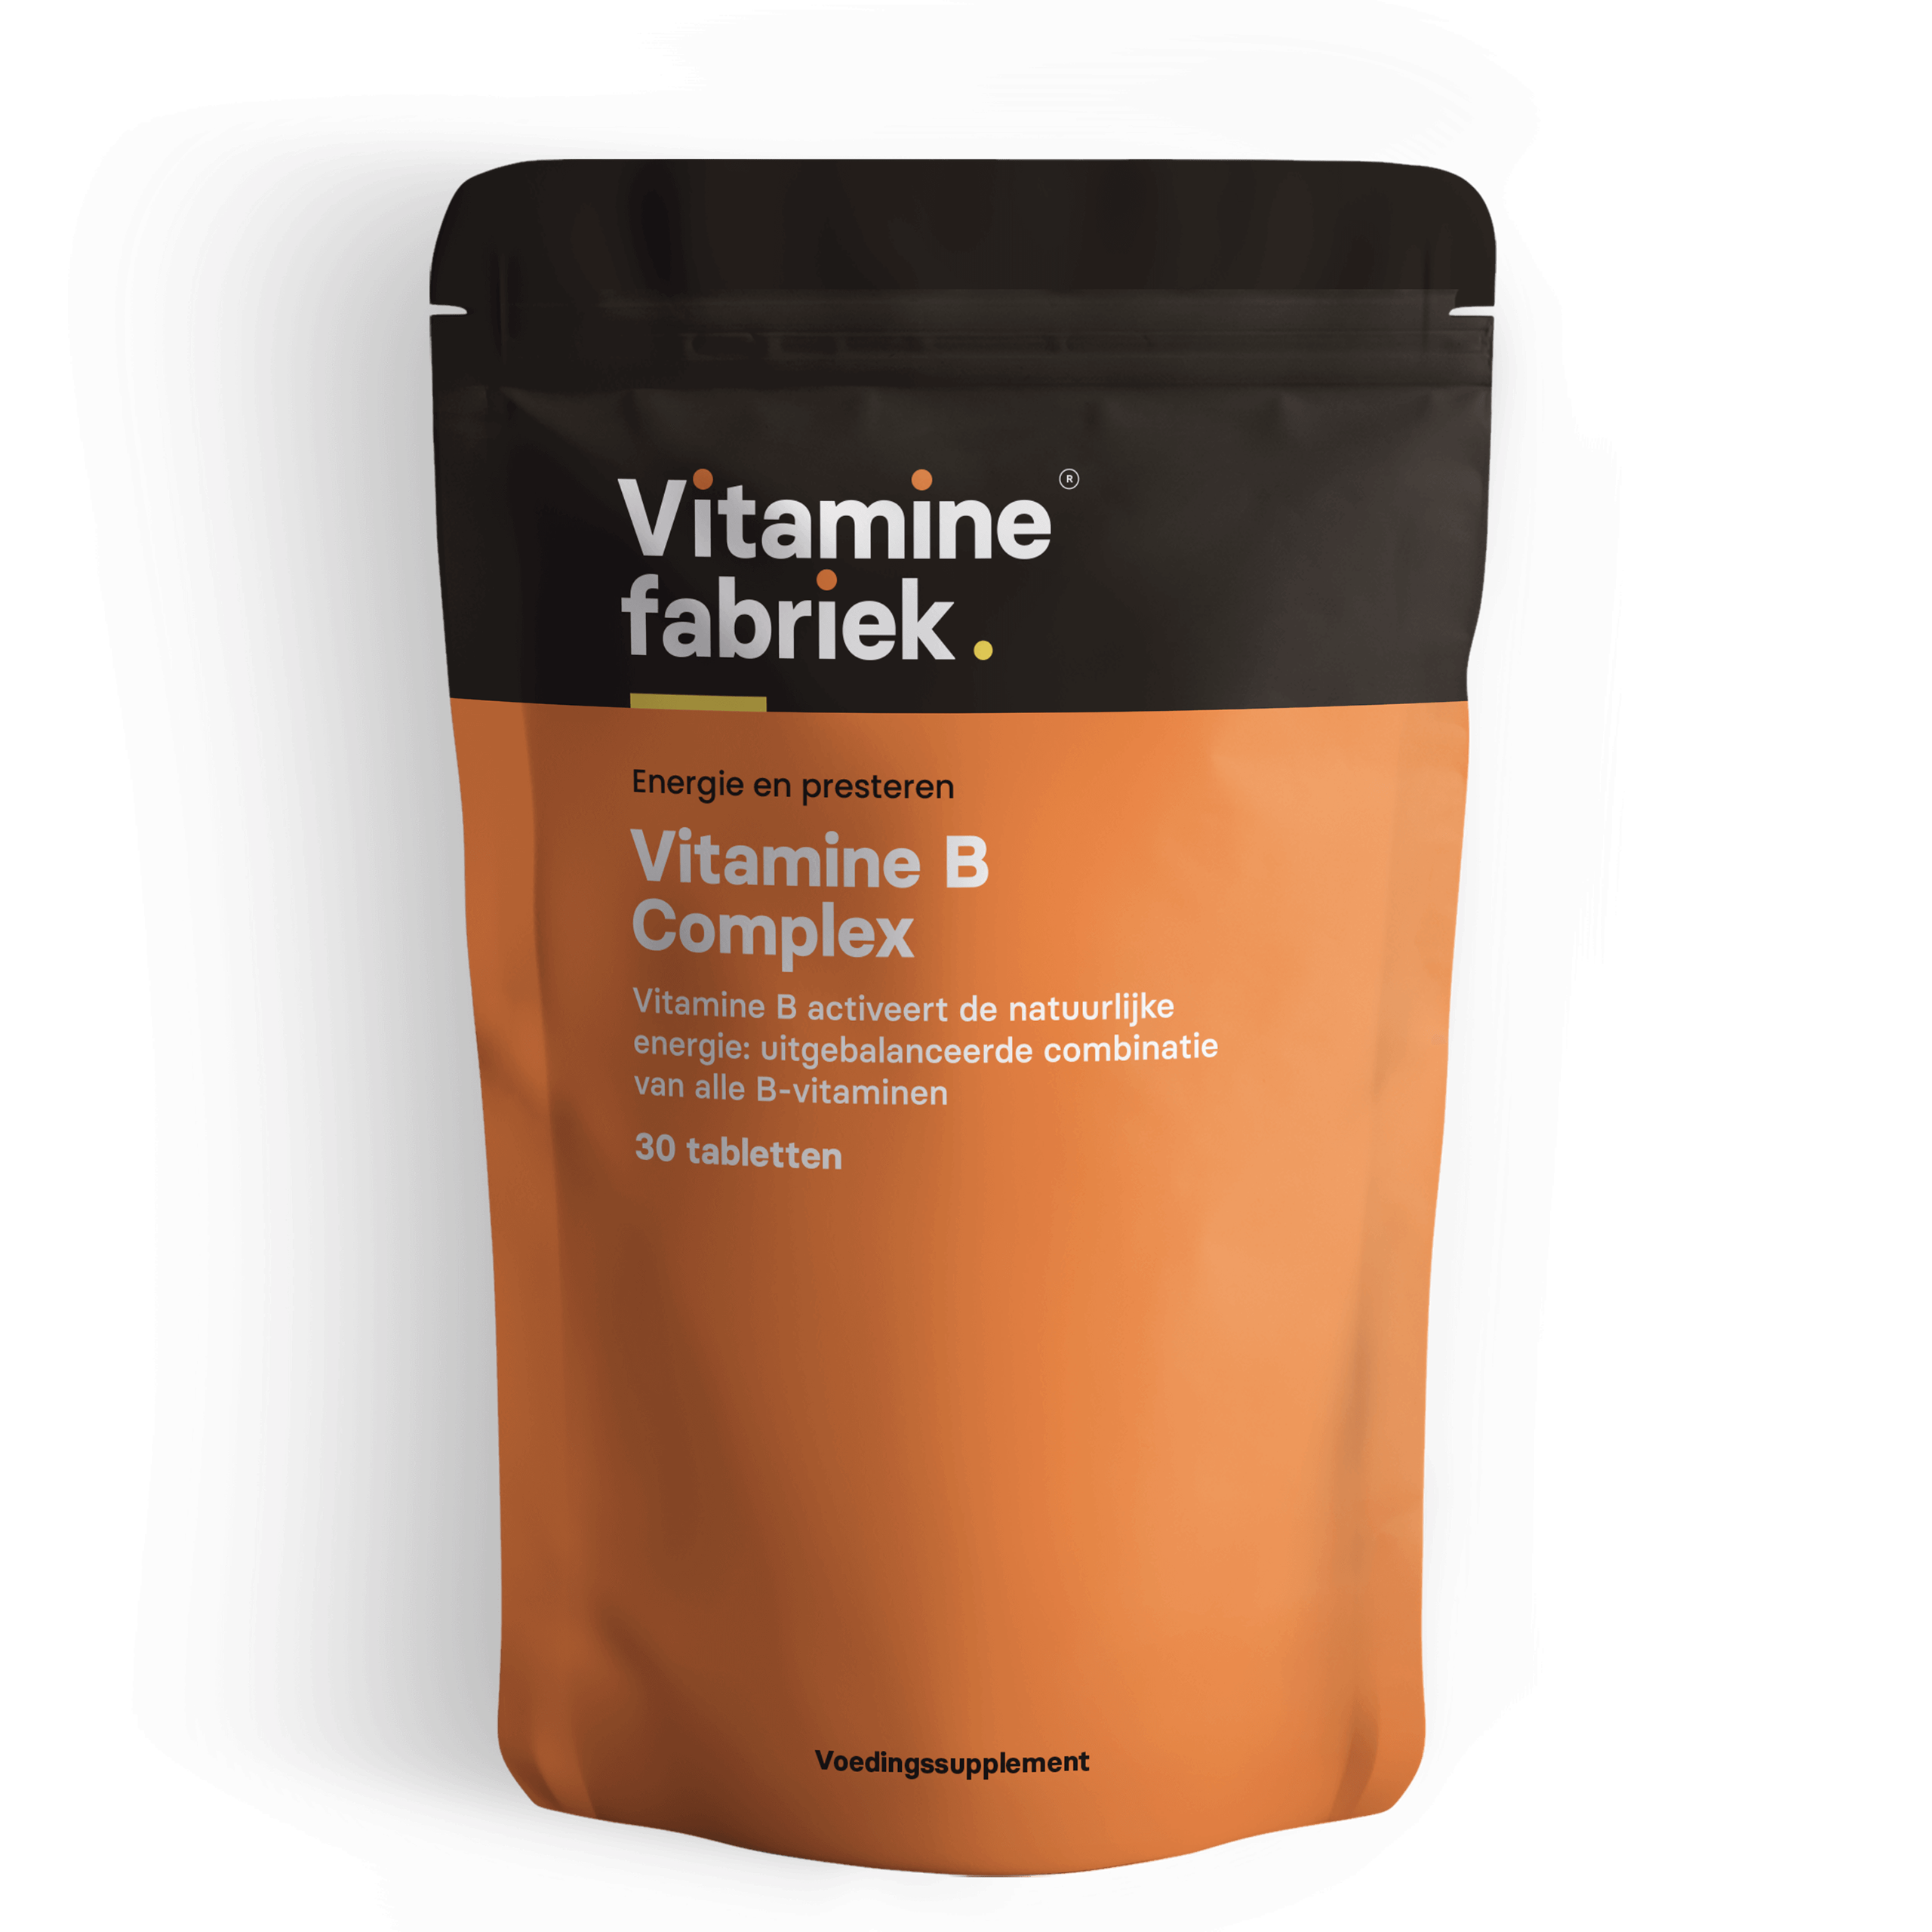 Vitamine B complex - 30 tabletten - Vitaminefabriek.nl